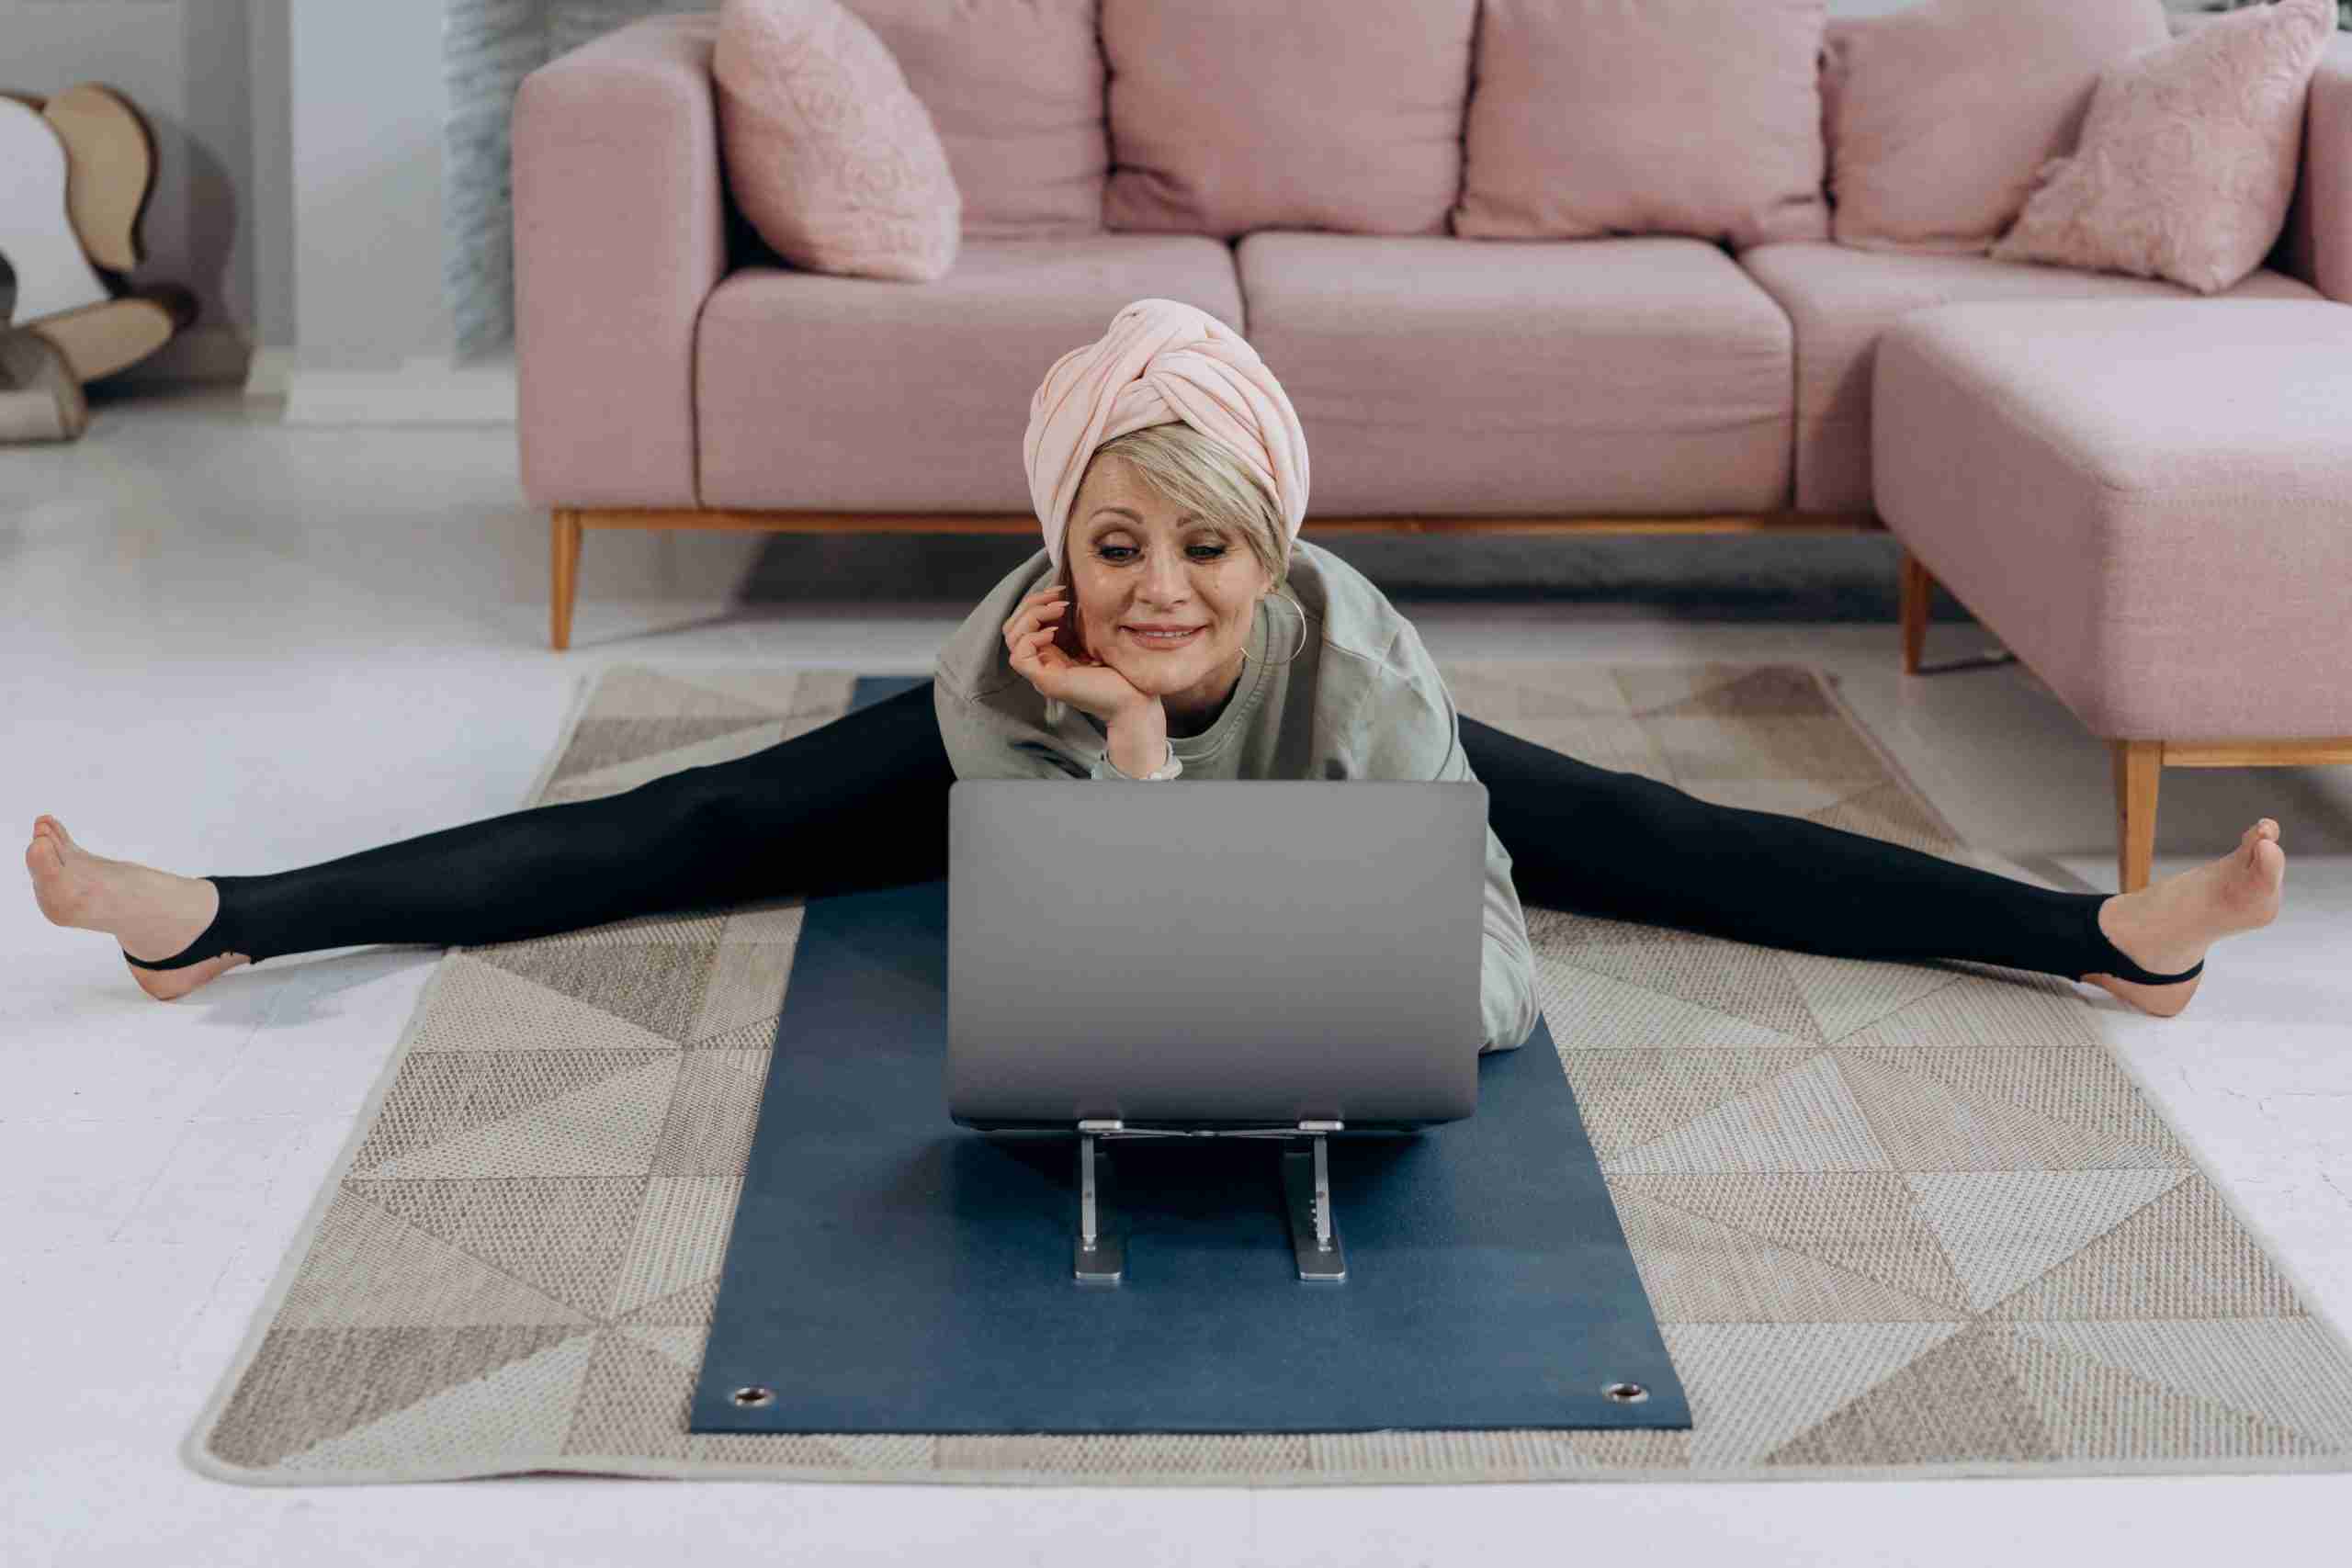 señora mayor haciendo estiramientos delante de un portátil sobre una alfombra; el deporte es bueno a cualquier edad salud bienestar blog before-night-falls.com
